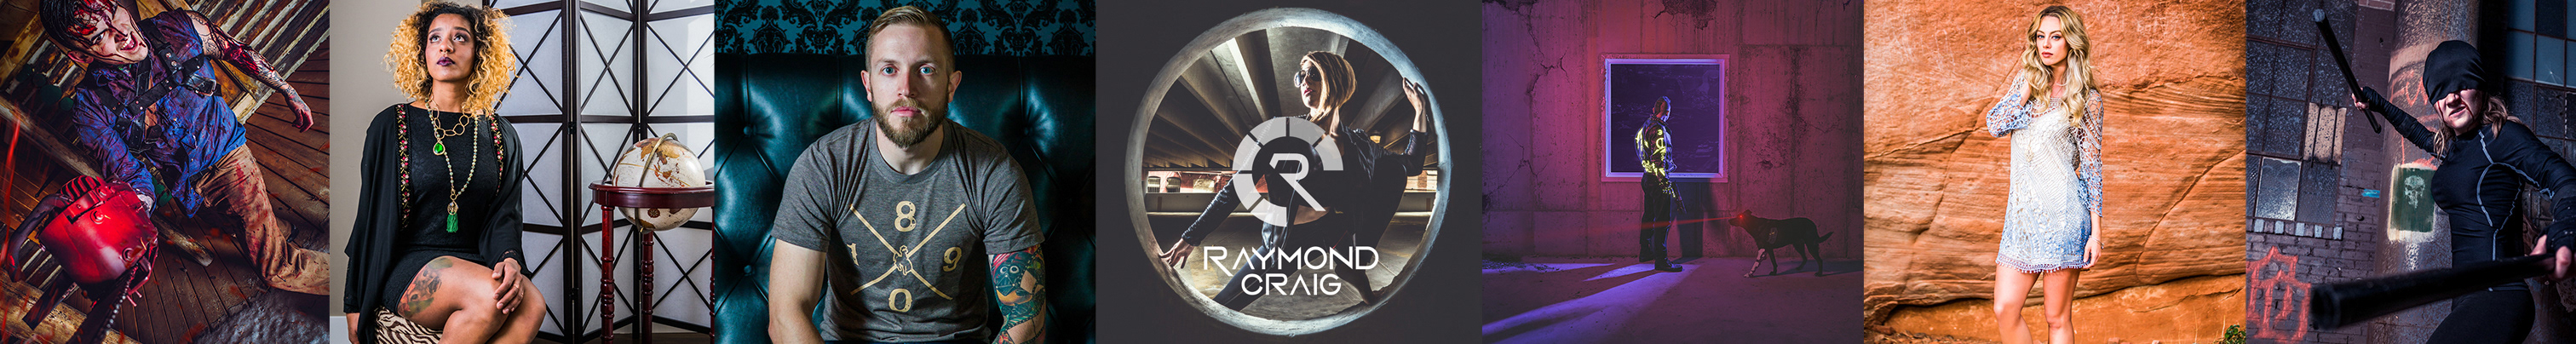 Raymond Craig profil başlığı